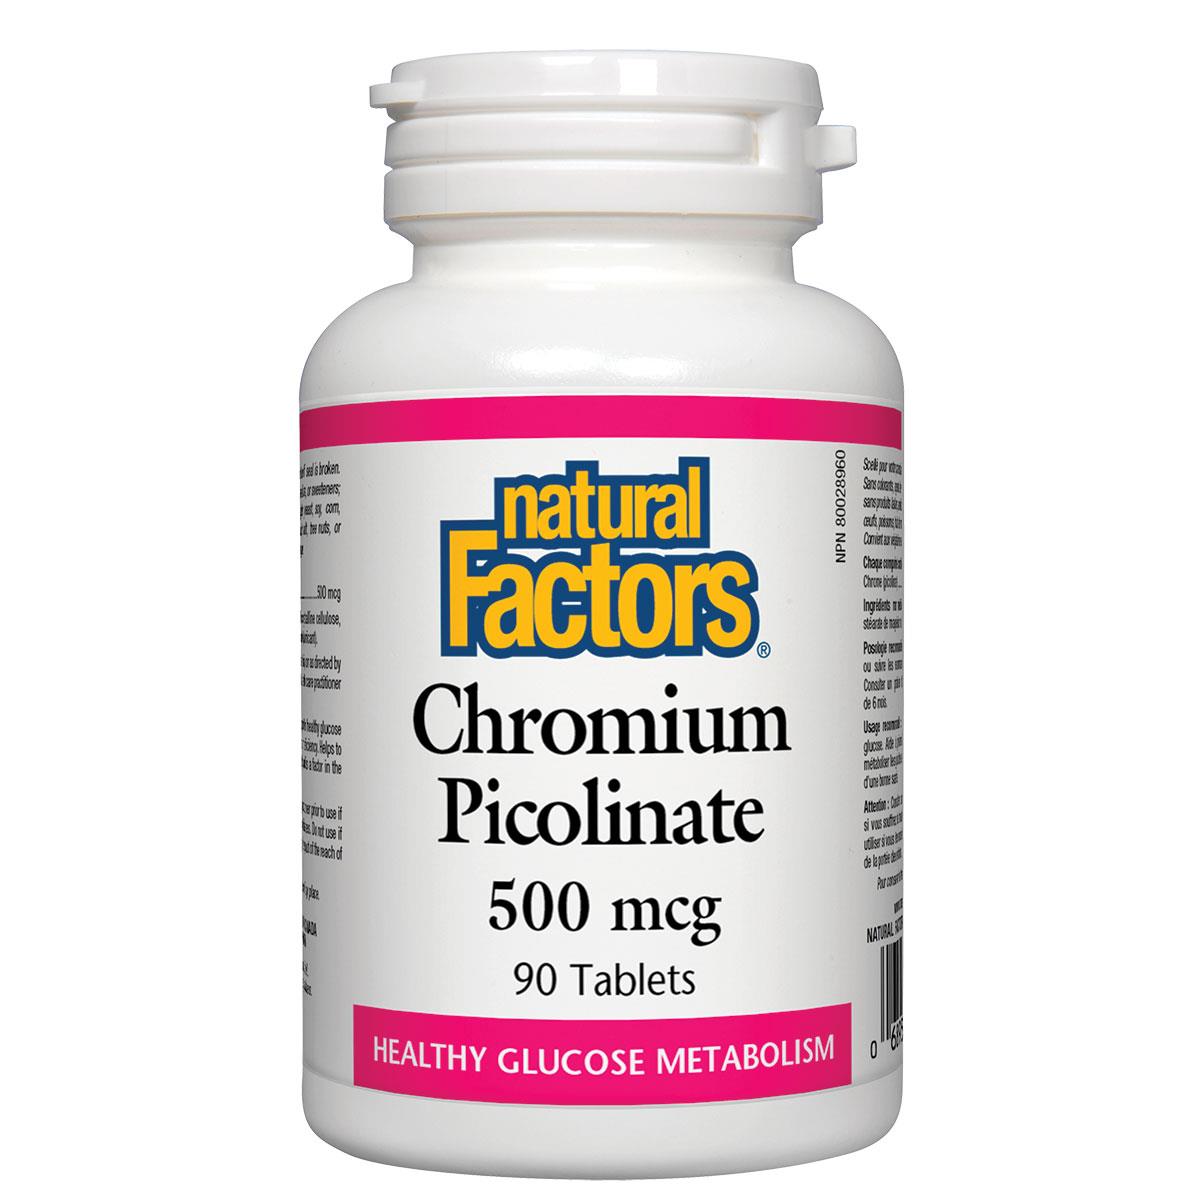 Natural Factors Chromium Picolinate, 500mcg / 90 Tabs